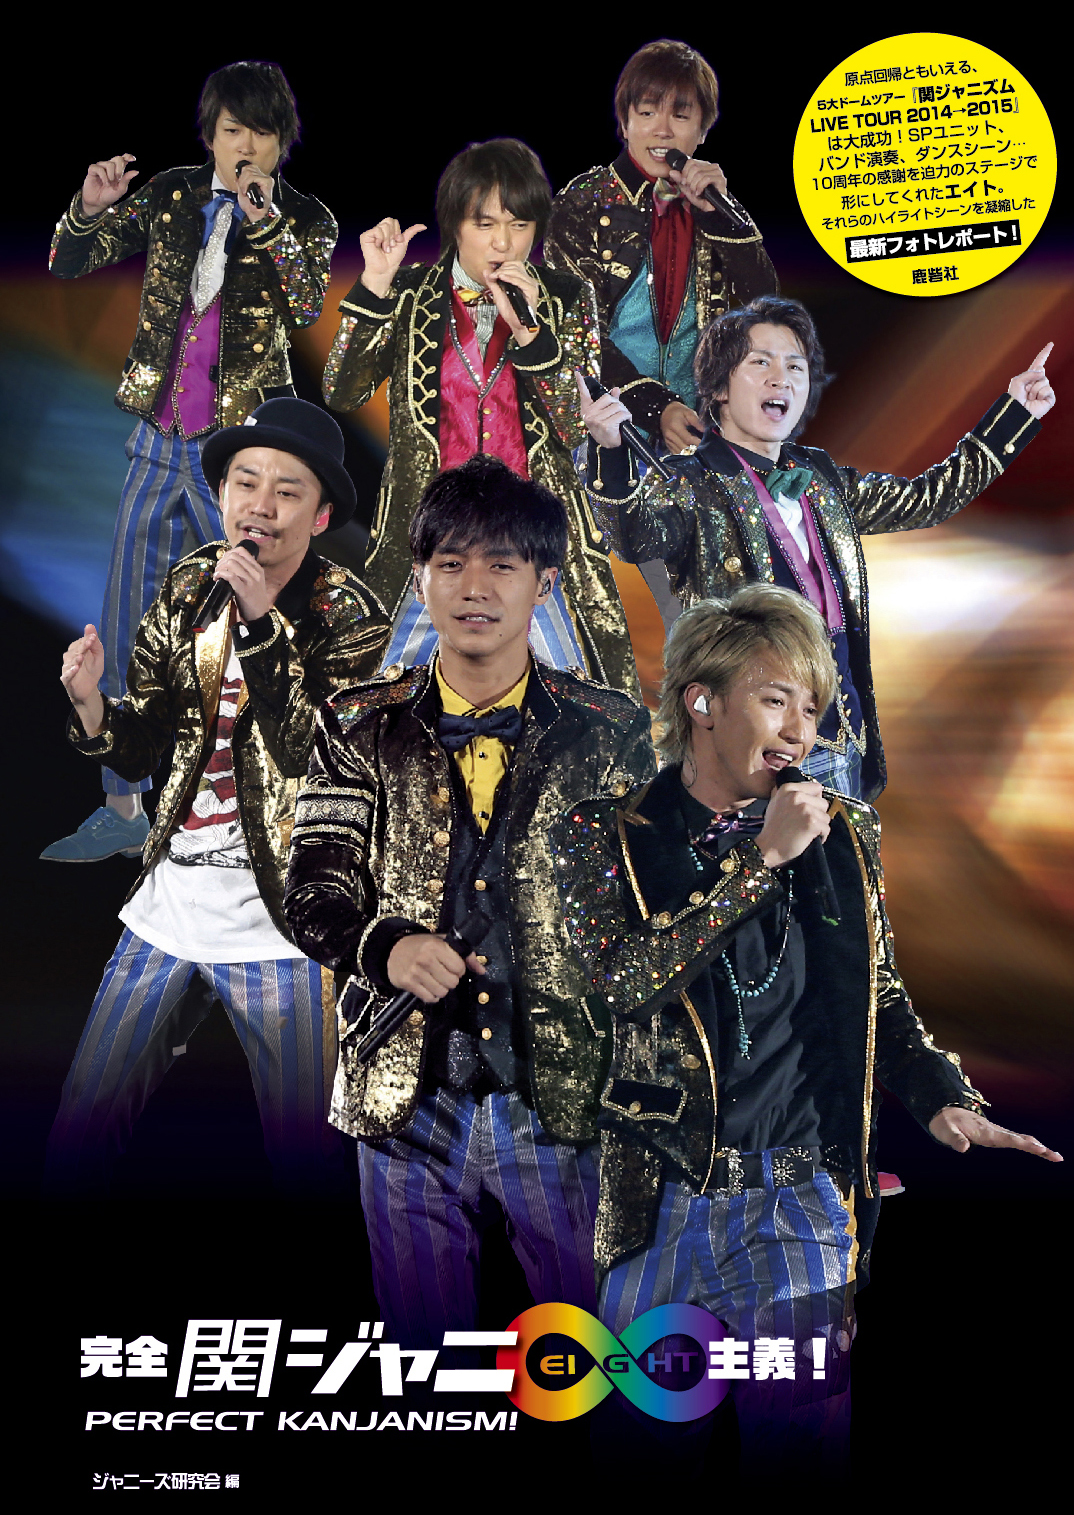 関ジャニ∞ 関ジャニズム LIVE TOUR 2014>>2015〈初回限定盤… - ブルーレイ